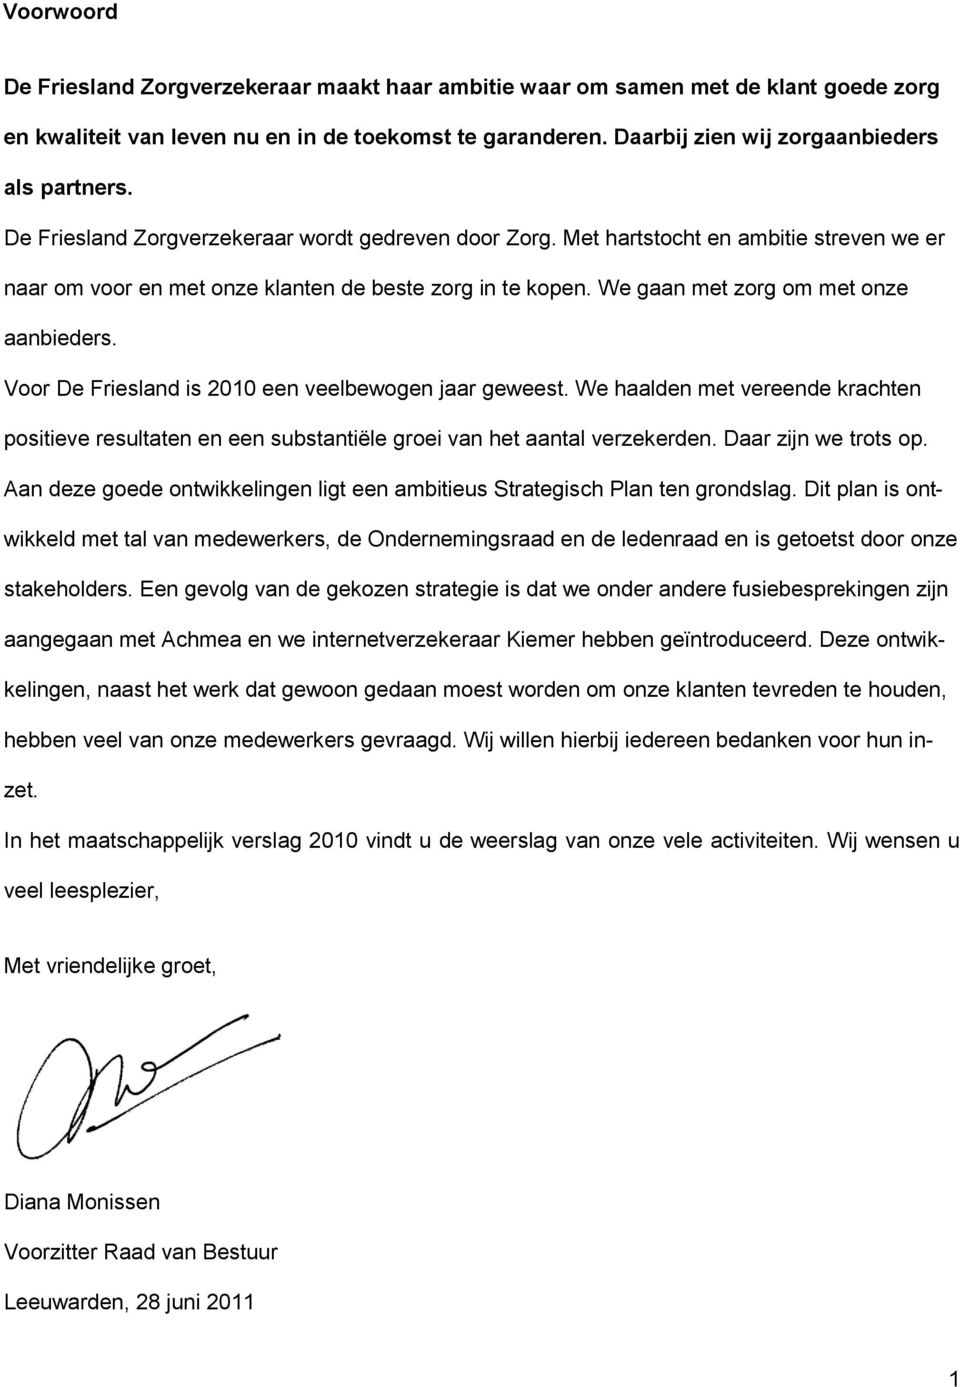 Voor De Friesland is 2010 een veelbewogen jaar geweest. We haalden met vereende krachten positieve resultaten en een substantiële groei van het aantal verzekerden. Daar zijn we trots op.